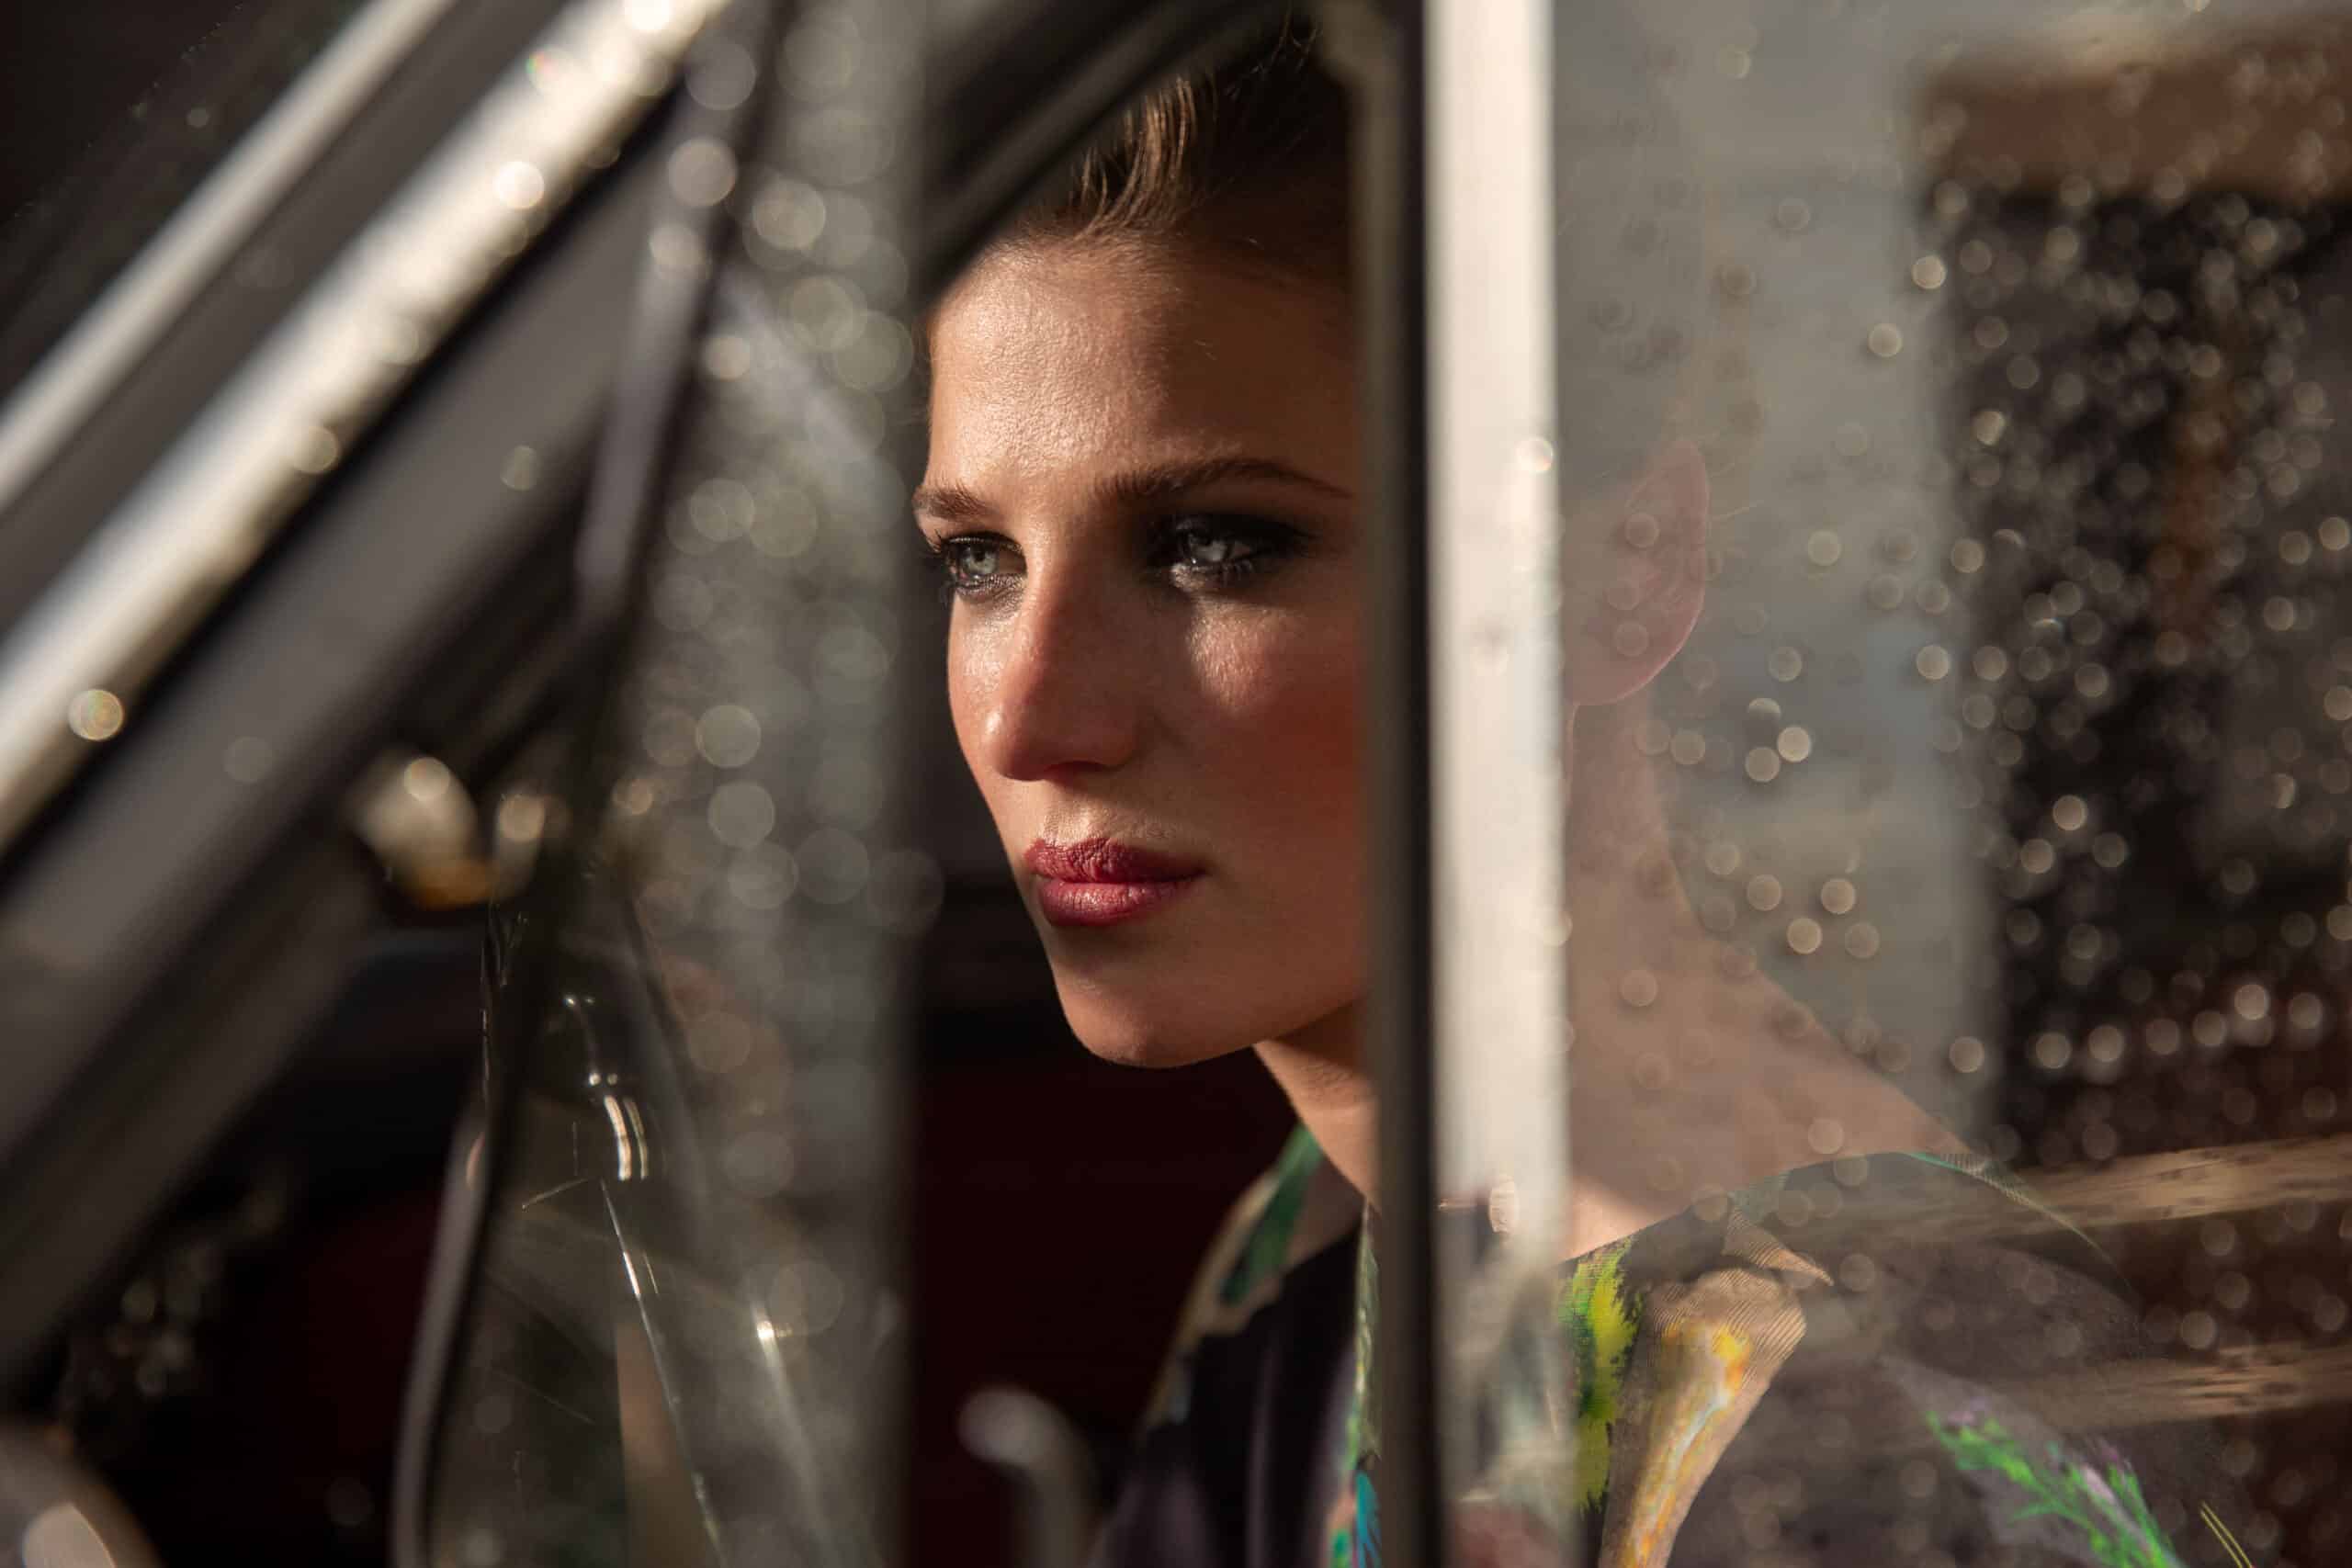 Eine Frau blickt nachdenklich aus einem Autofenster. Ihr Gesicht wird teilweise vom Sonnenlicht beleuchtet, was ihren klaren Teint und ihren nachdenklichen Ausdruck hervorhebt. © Fotografie Tomas Rodriguez